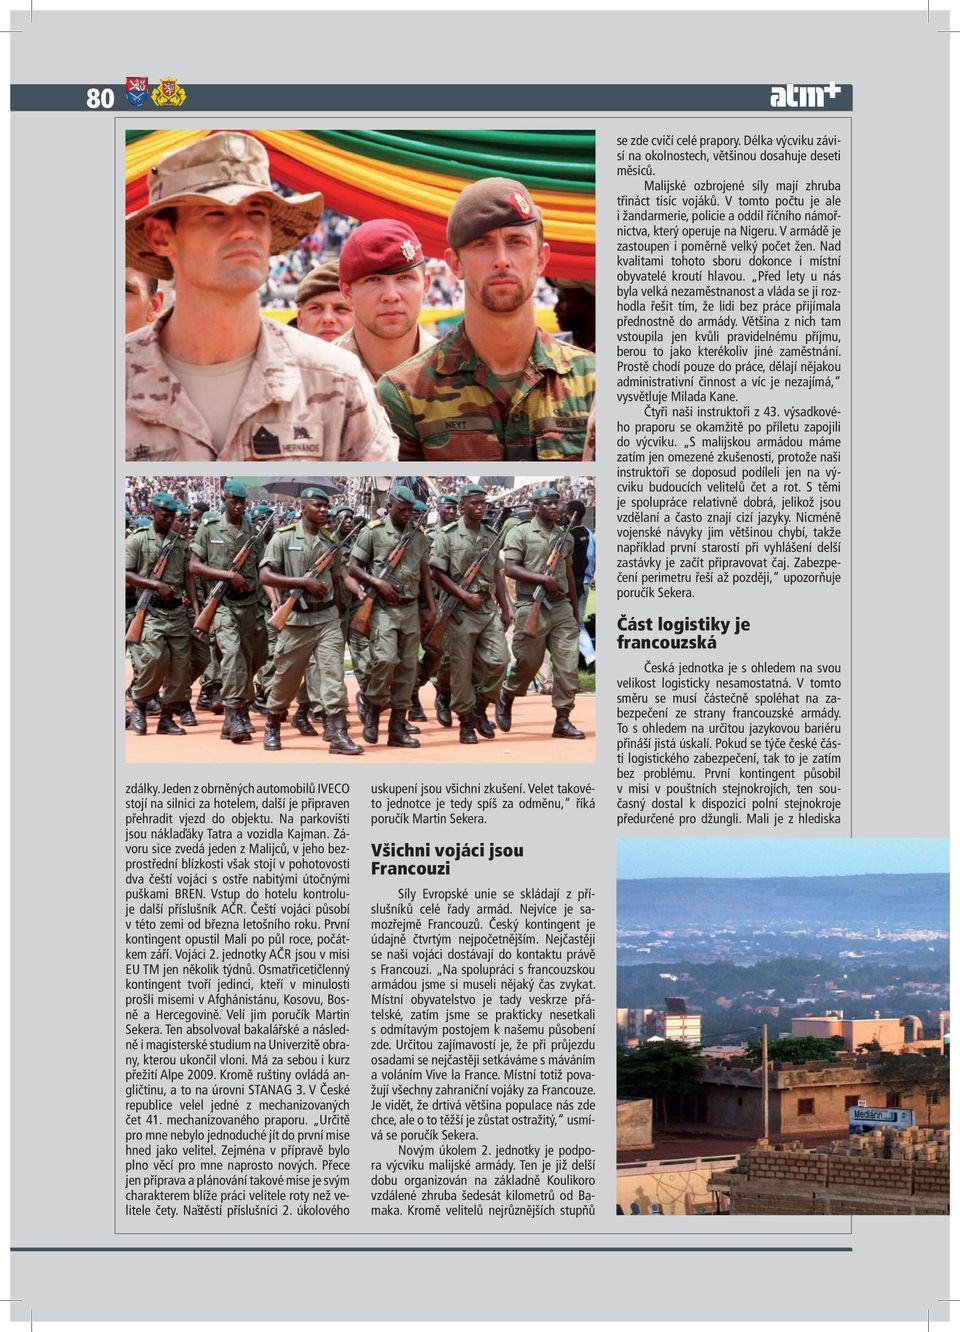 Čeští vojáci působí v této zemi od března letošního roku. První kontingent opustil Mali po půl roce, počátkem září. Vojáci 2. jednotky AČR jsou v misi EU TM jen několik týdnů.